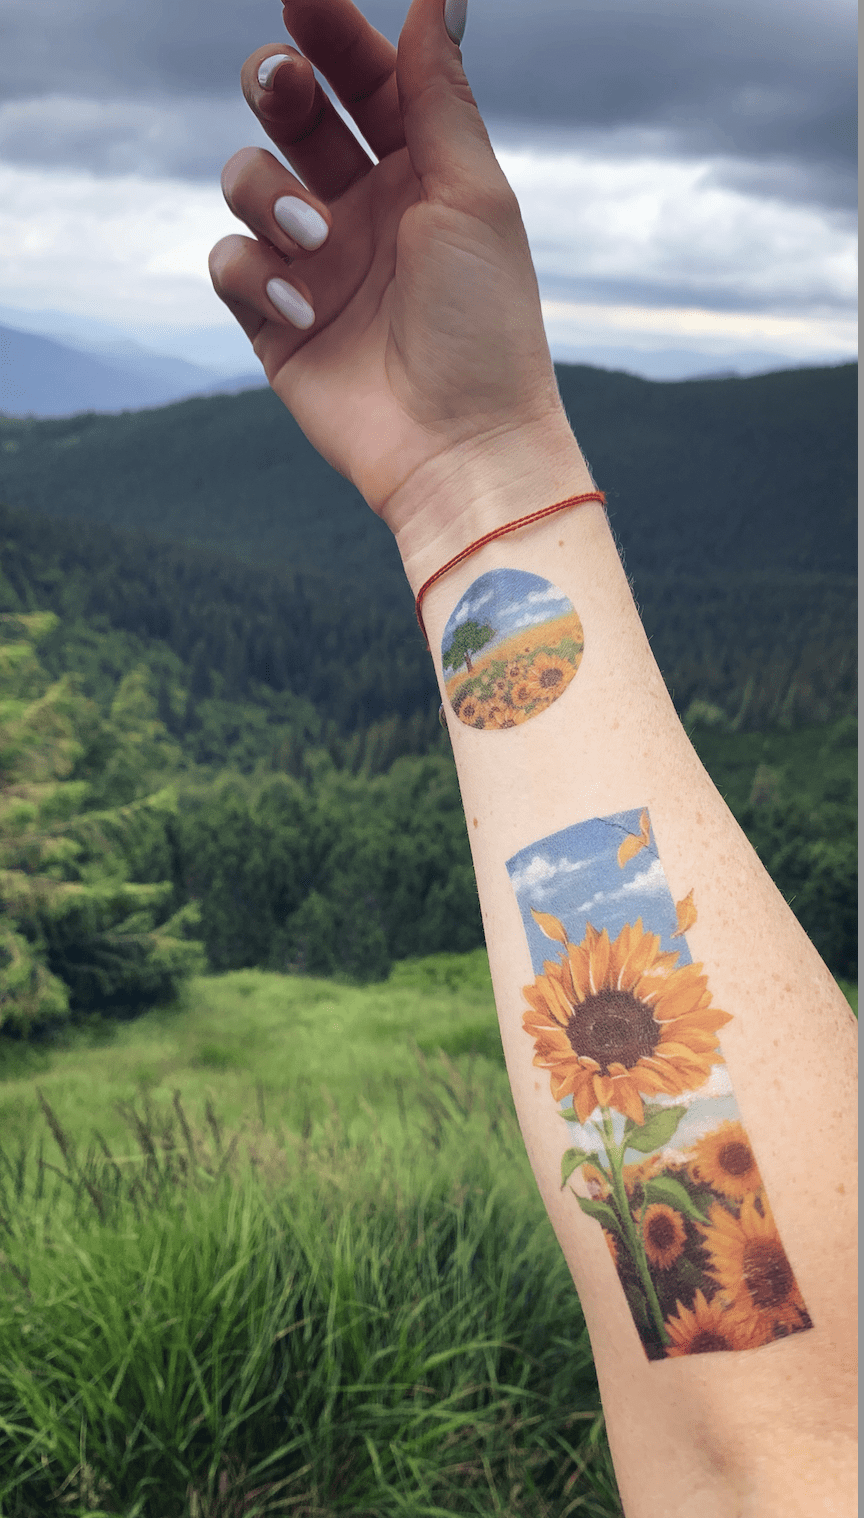 Zealand Tattoo  Pretty sunflower to brighten the day   Facebook